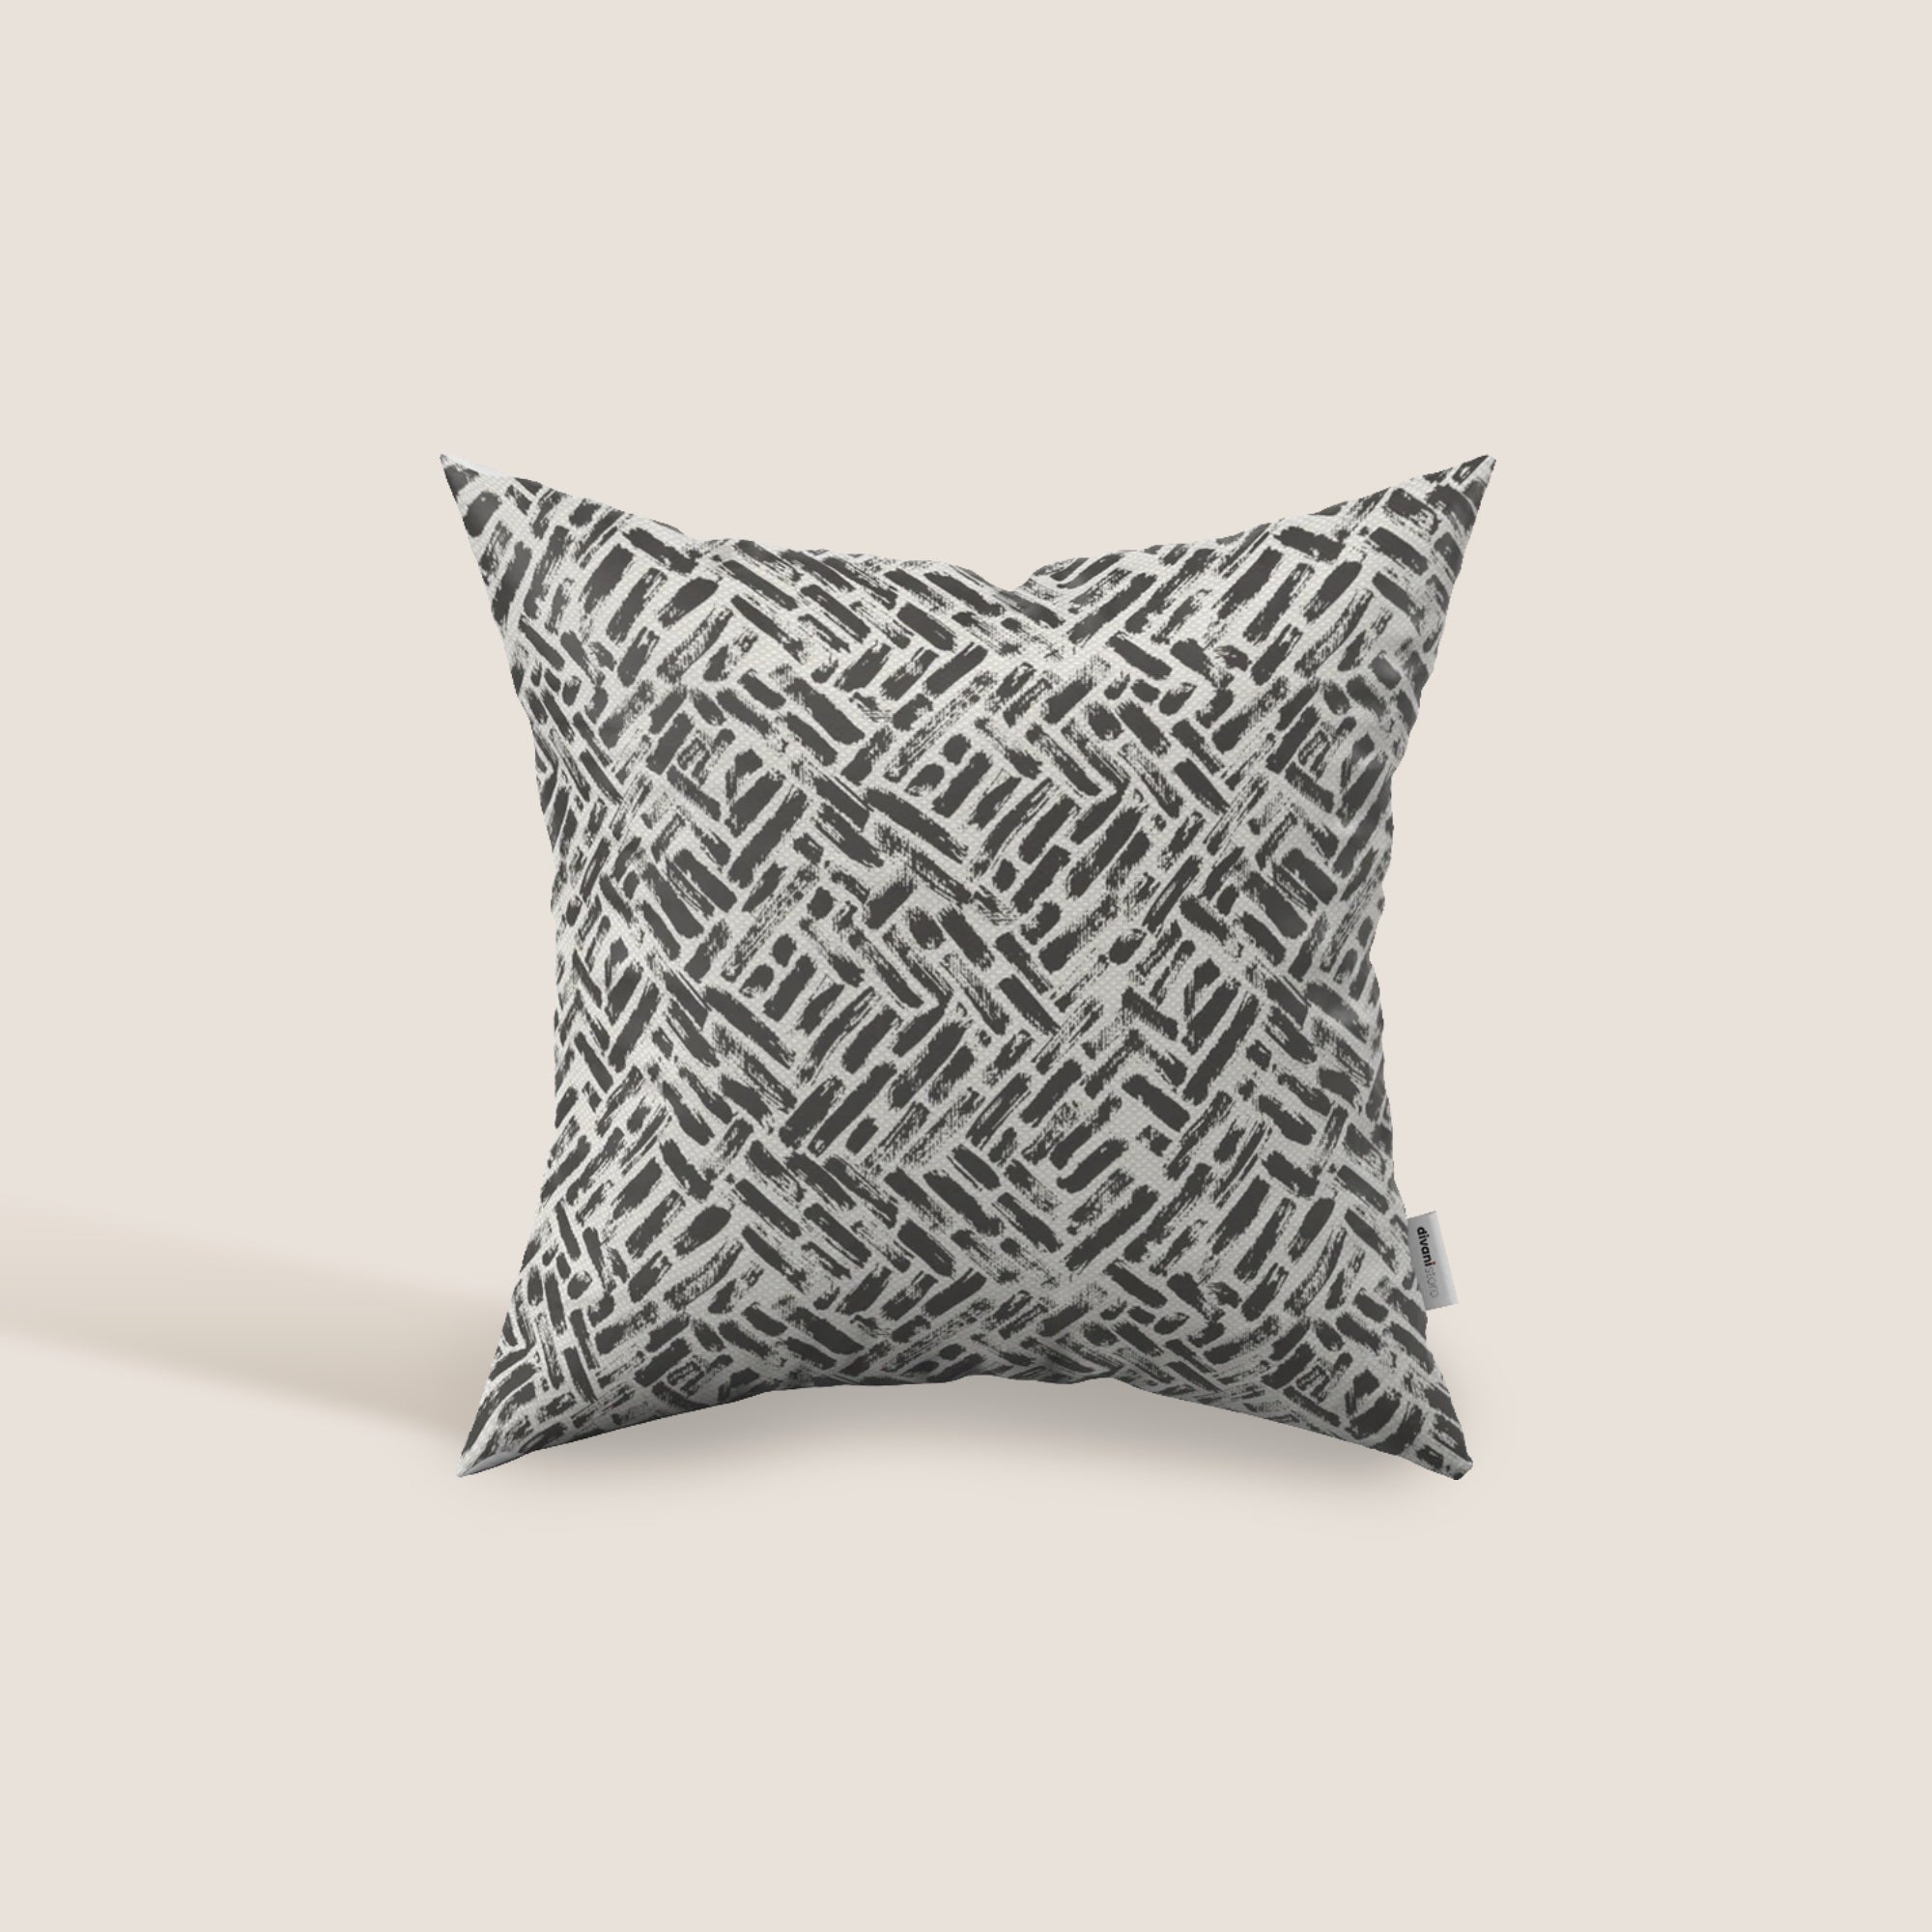 Brick cuscino geometrico disponibile in diversi colori realizzato in tessuto Idrorepellente